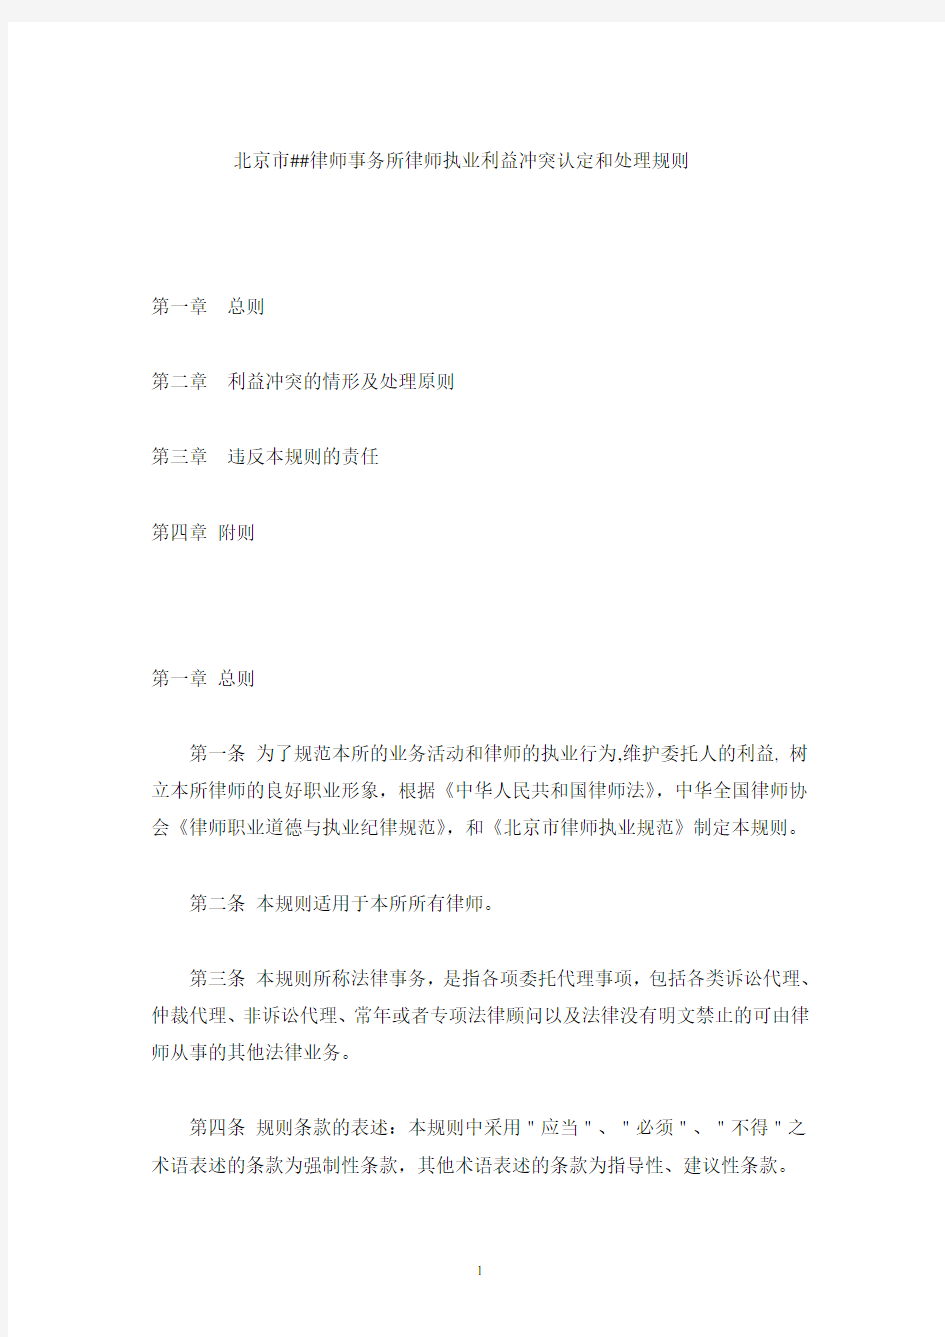 北京##律师事务所律师执业利益冲突认定和处理规则